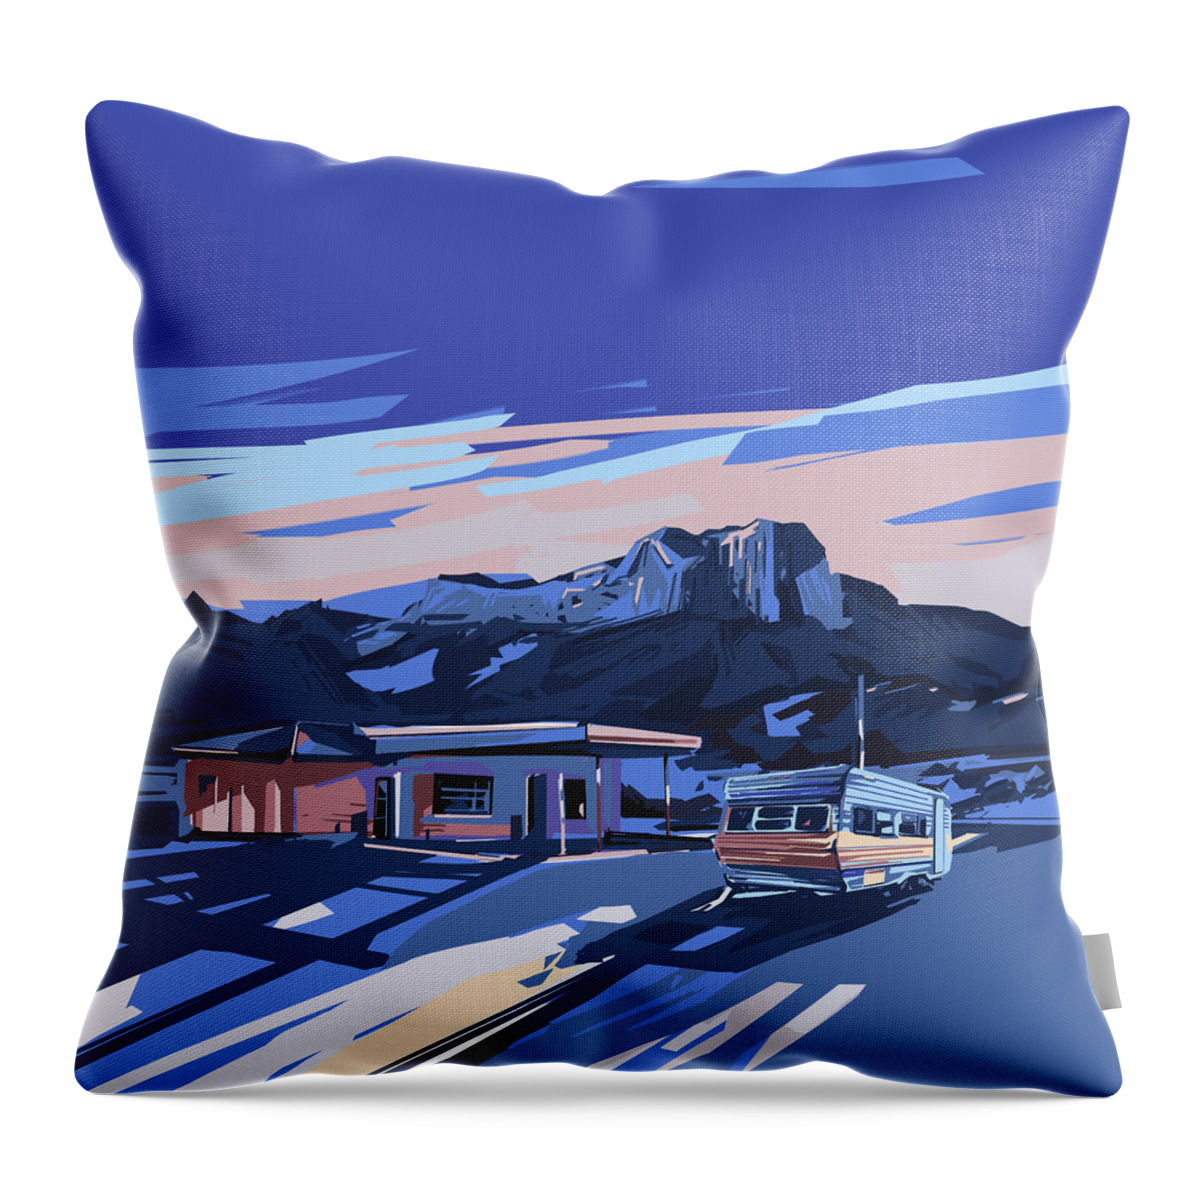 Road Throw Pillow featuring the digital art Desert Landscape 2 by Bekim M